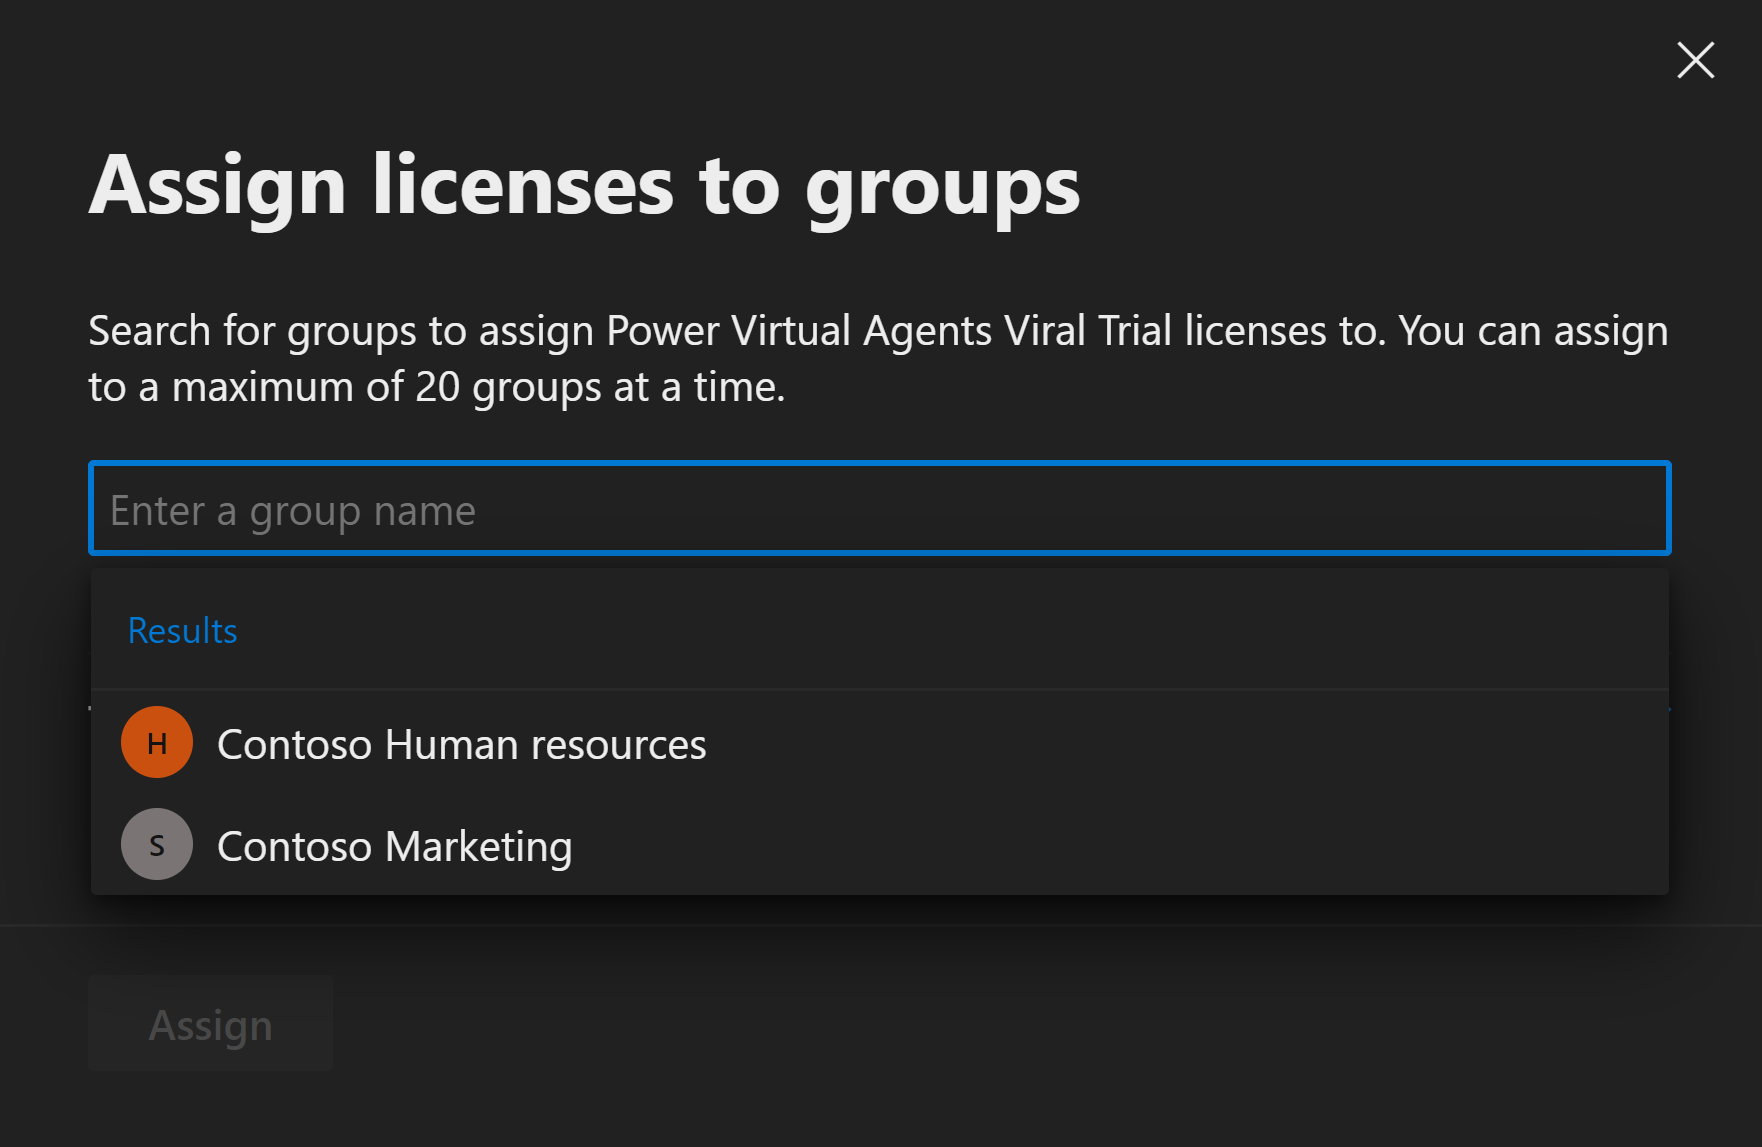 Captura de tela do portal que permite aos usuários escolher o grupo a ser usado para atribuição de licença.